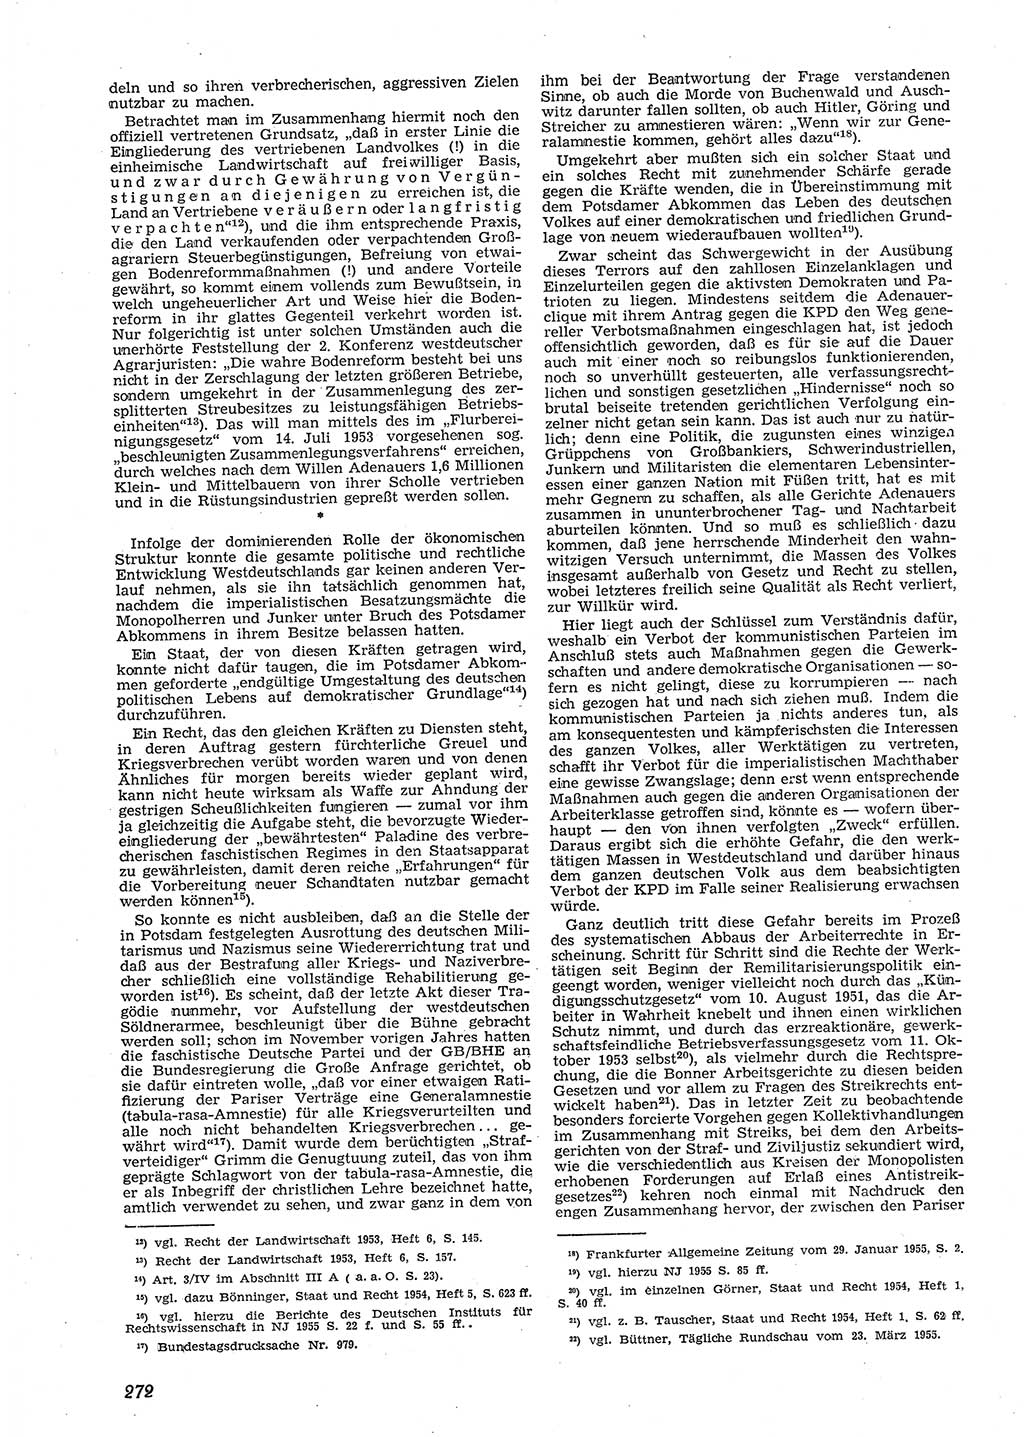 Neue Justiz (NJ), Zeitschrift für Recht und Rechtswissenschaft [Deutsche Demokratische Republik (DDR)], 9. Jahrgang 1955, Seite 272 (NJ DDR 1955, S. 272)